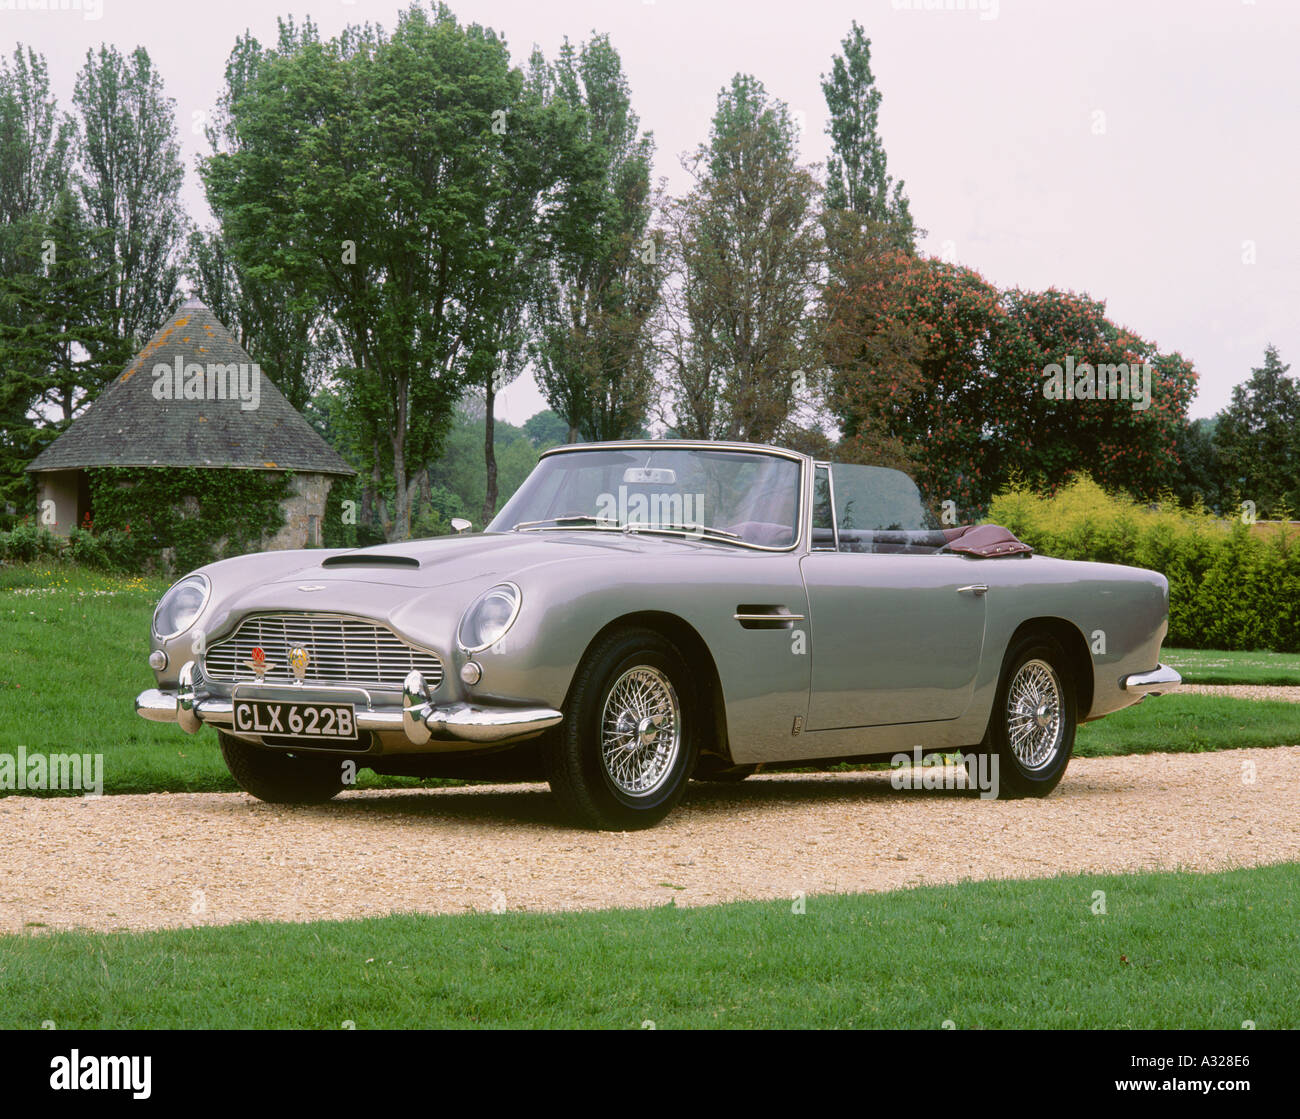 1964 Aston Martin DB5 volante Stock Photo - Alamy